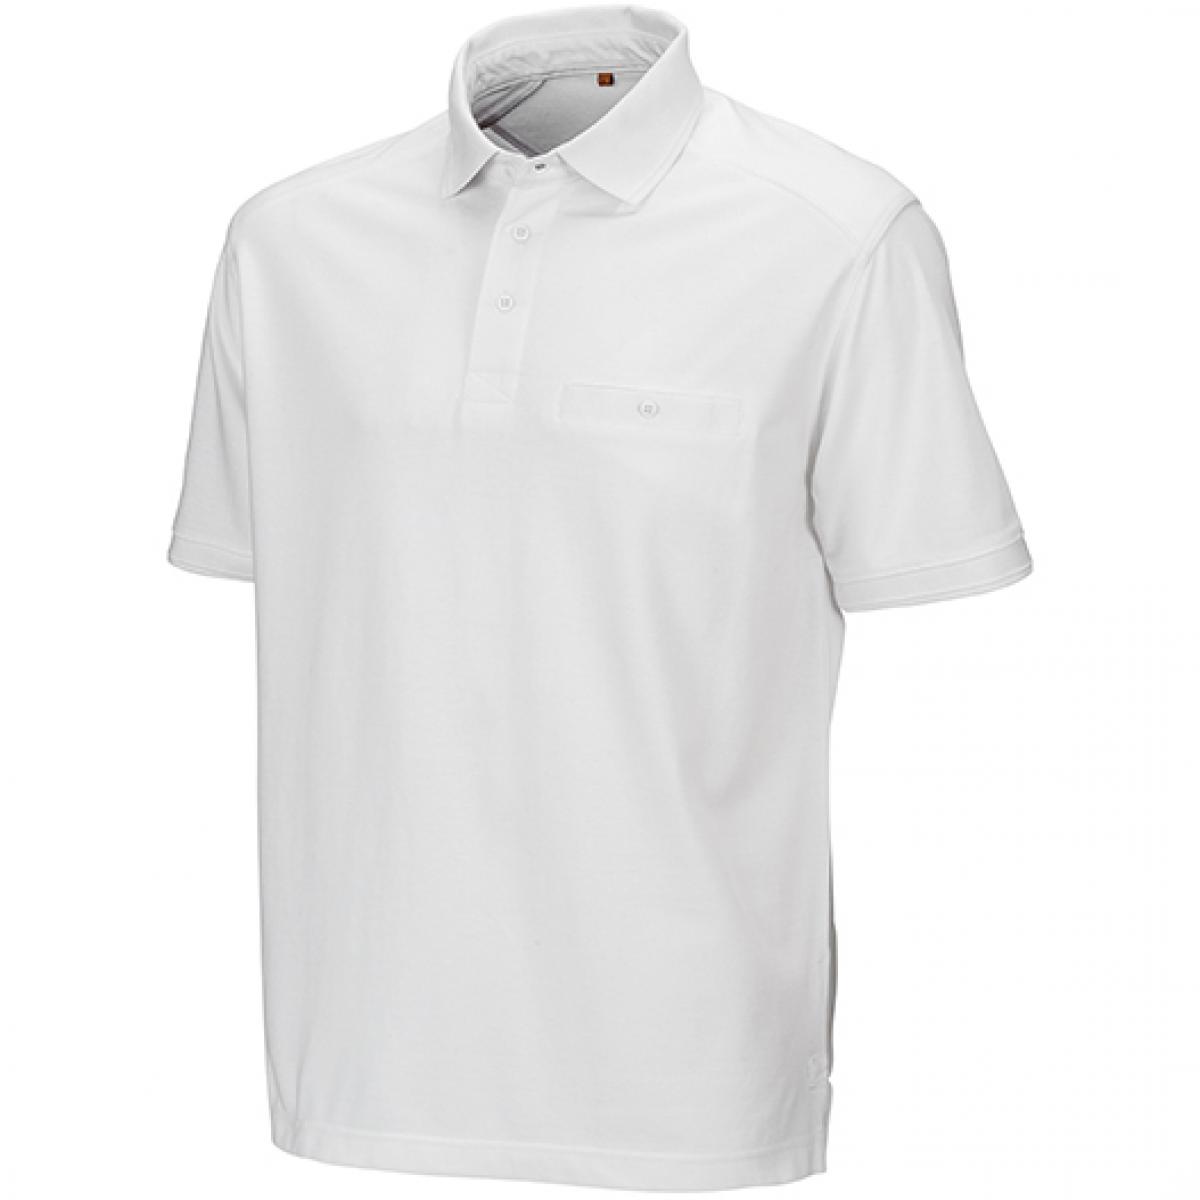 Hersteller: Result WORK-GUARD Herstellernummer: R312X Artikelbezeichnung: Herren Apex Polo Shirt / Strapazierfähig aus Mischgewebe Farbe: White